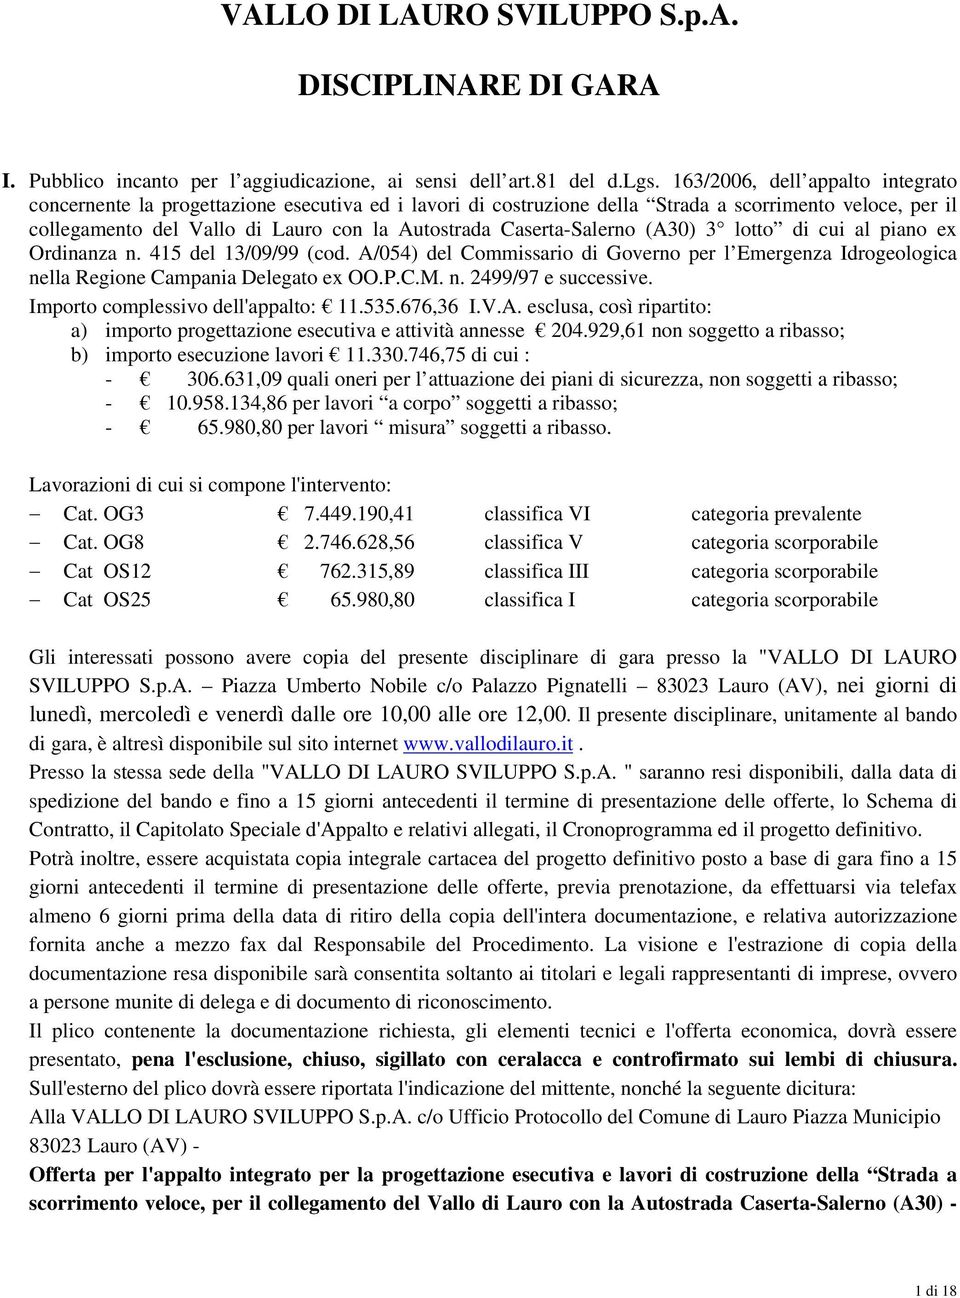 Caserta-Salerno (A30) 3 lotto di cui al piano ex Ordinanza n. 415 del 13/09/99 (cod. A/054) del Commissario di Governo per l Emergenza Idrogeologica nella Regione Campania Delegato ex OO.P.C.M. n. 2499/97 e successive.